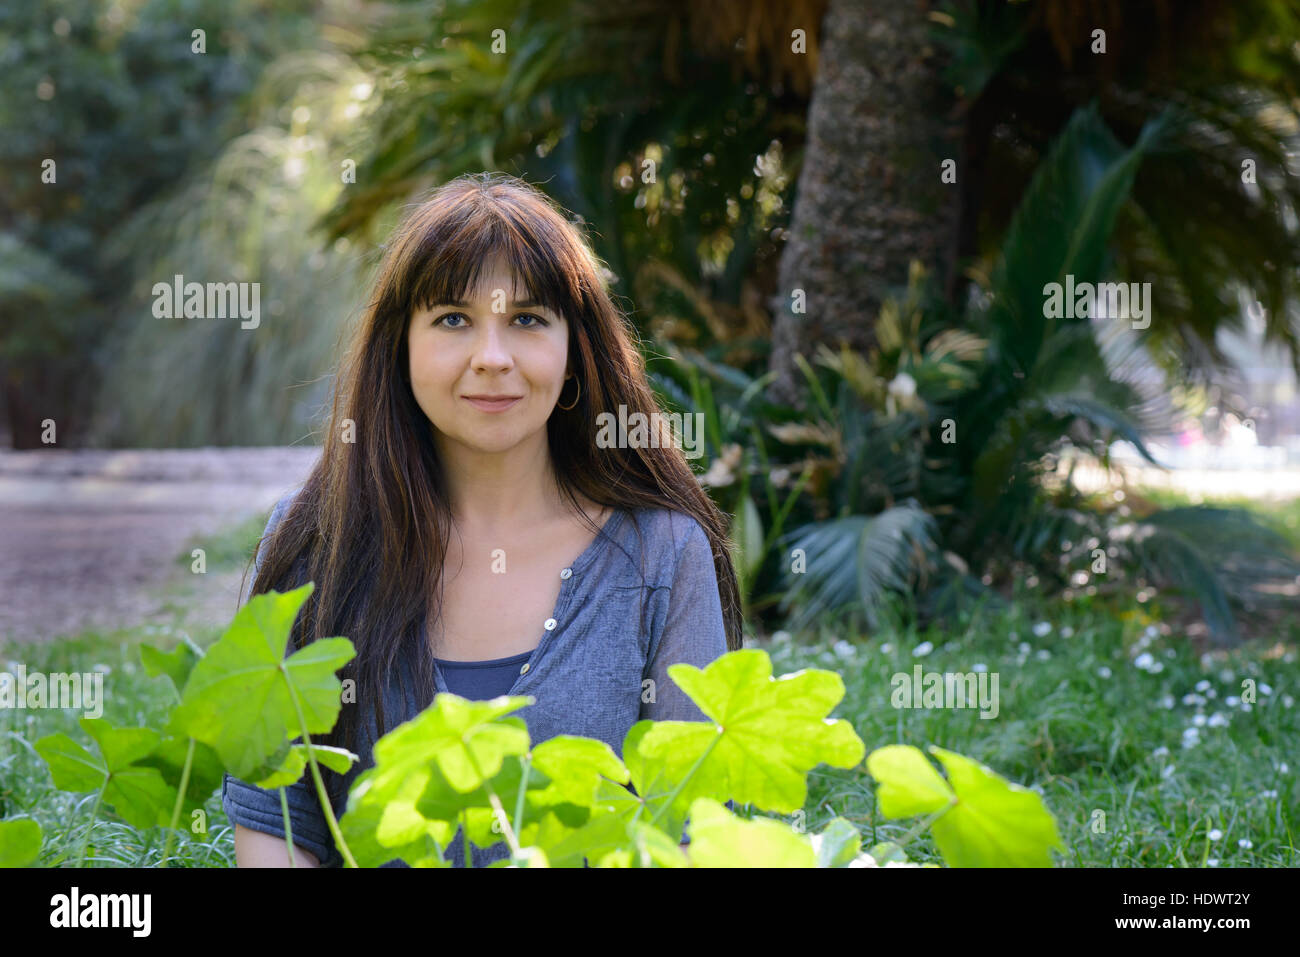 Ein nettes Mädchen posiert in einem Garten mit Grünpflanzen Stockfoto